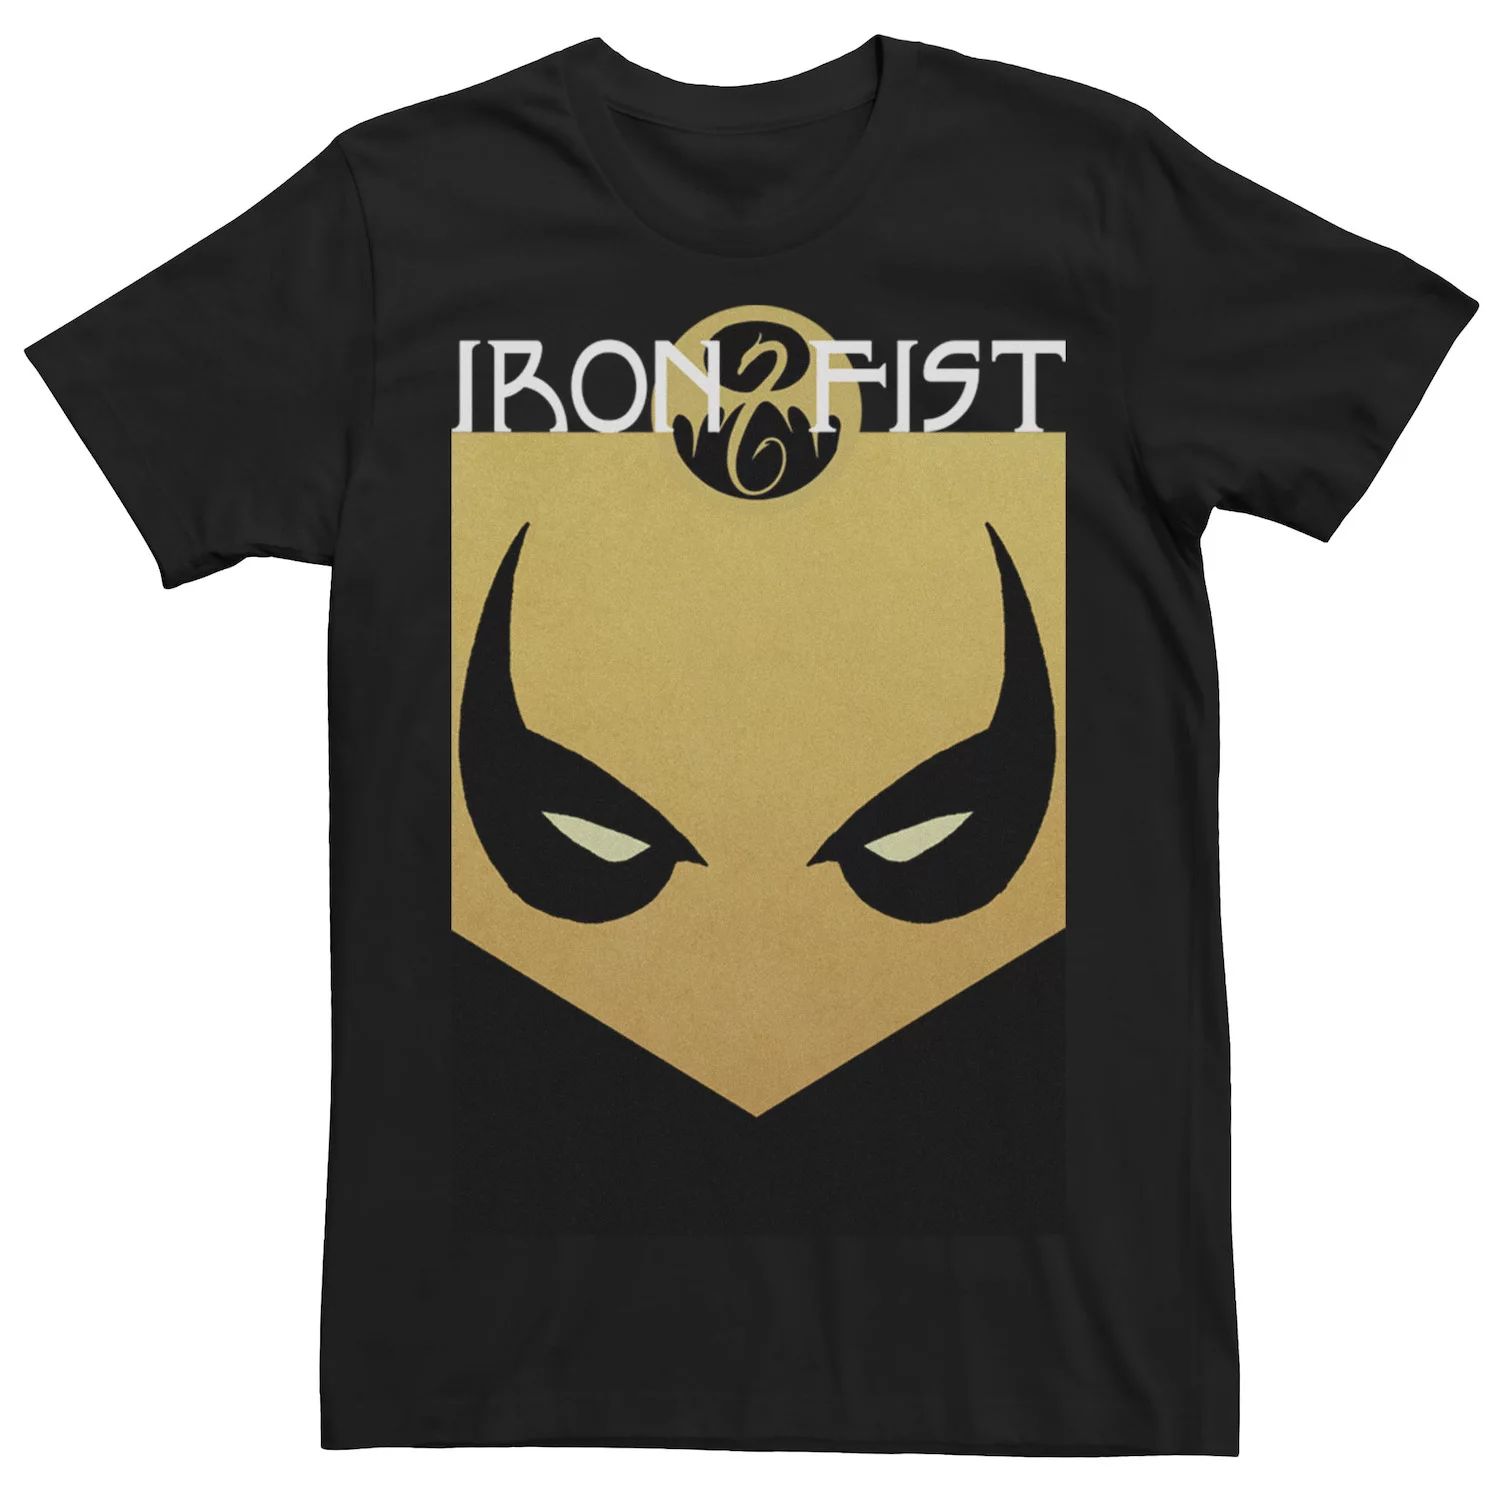 Мужская футболка с рисунком маски Marvel Iron Fist Mask printio футболка с полной запечаткой мужская iron fist